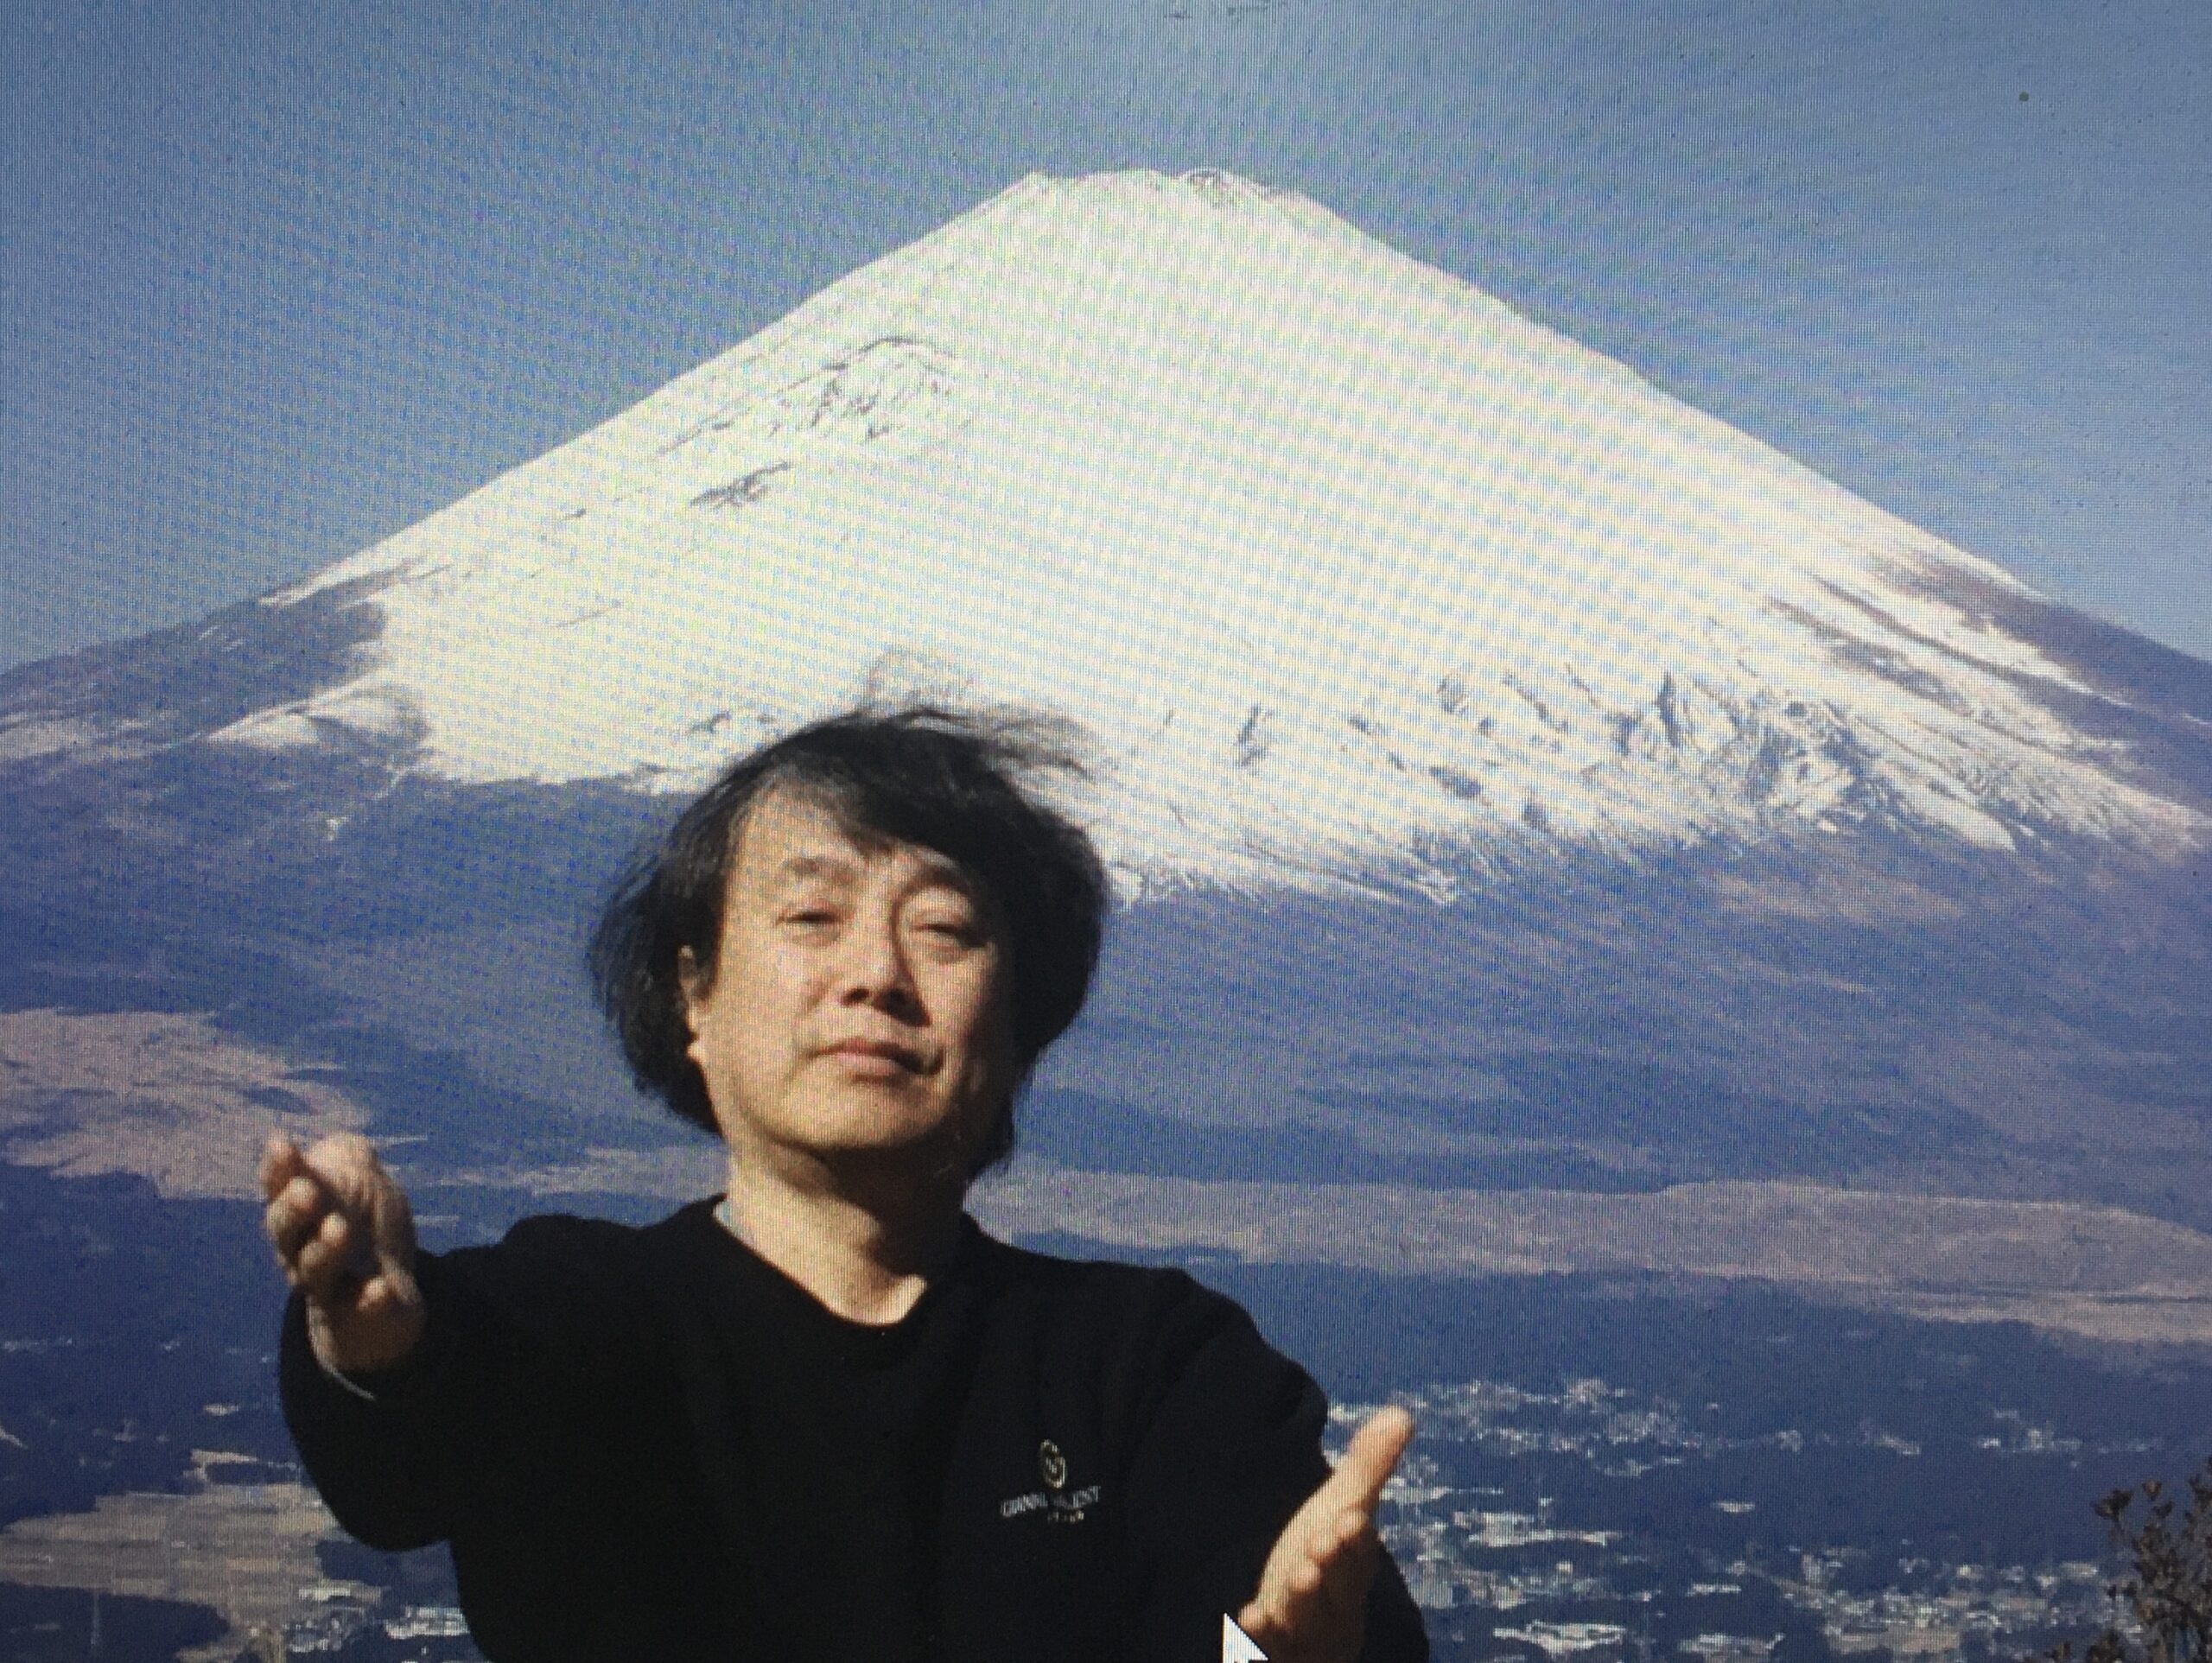 日本一のシンボル、富士山をえかき達は何故描くのでしょうか？